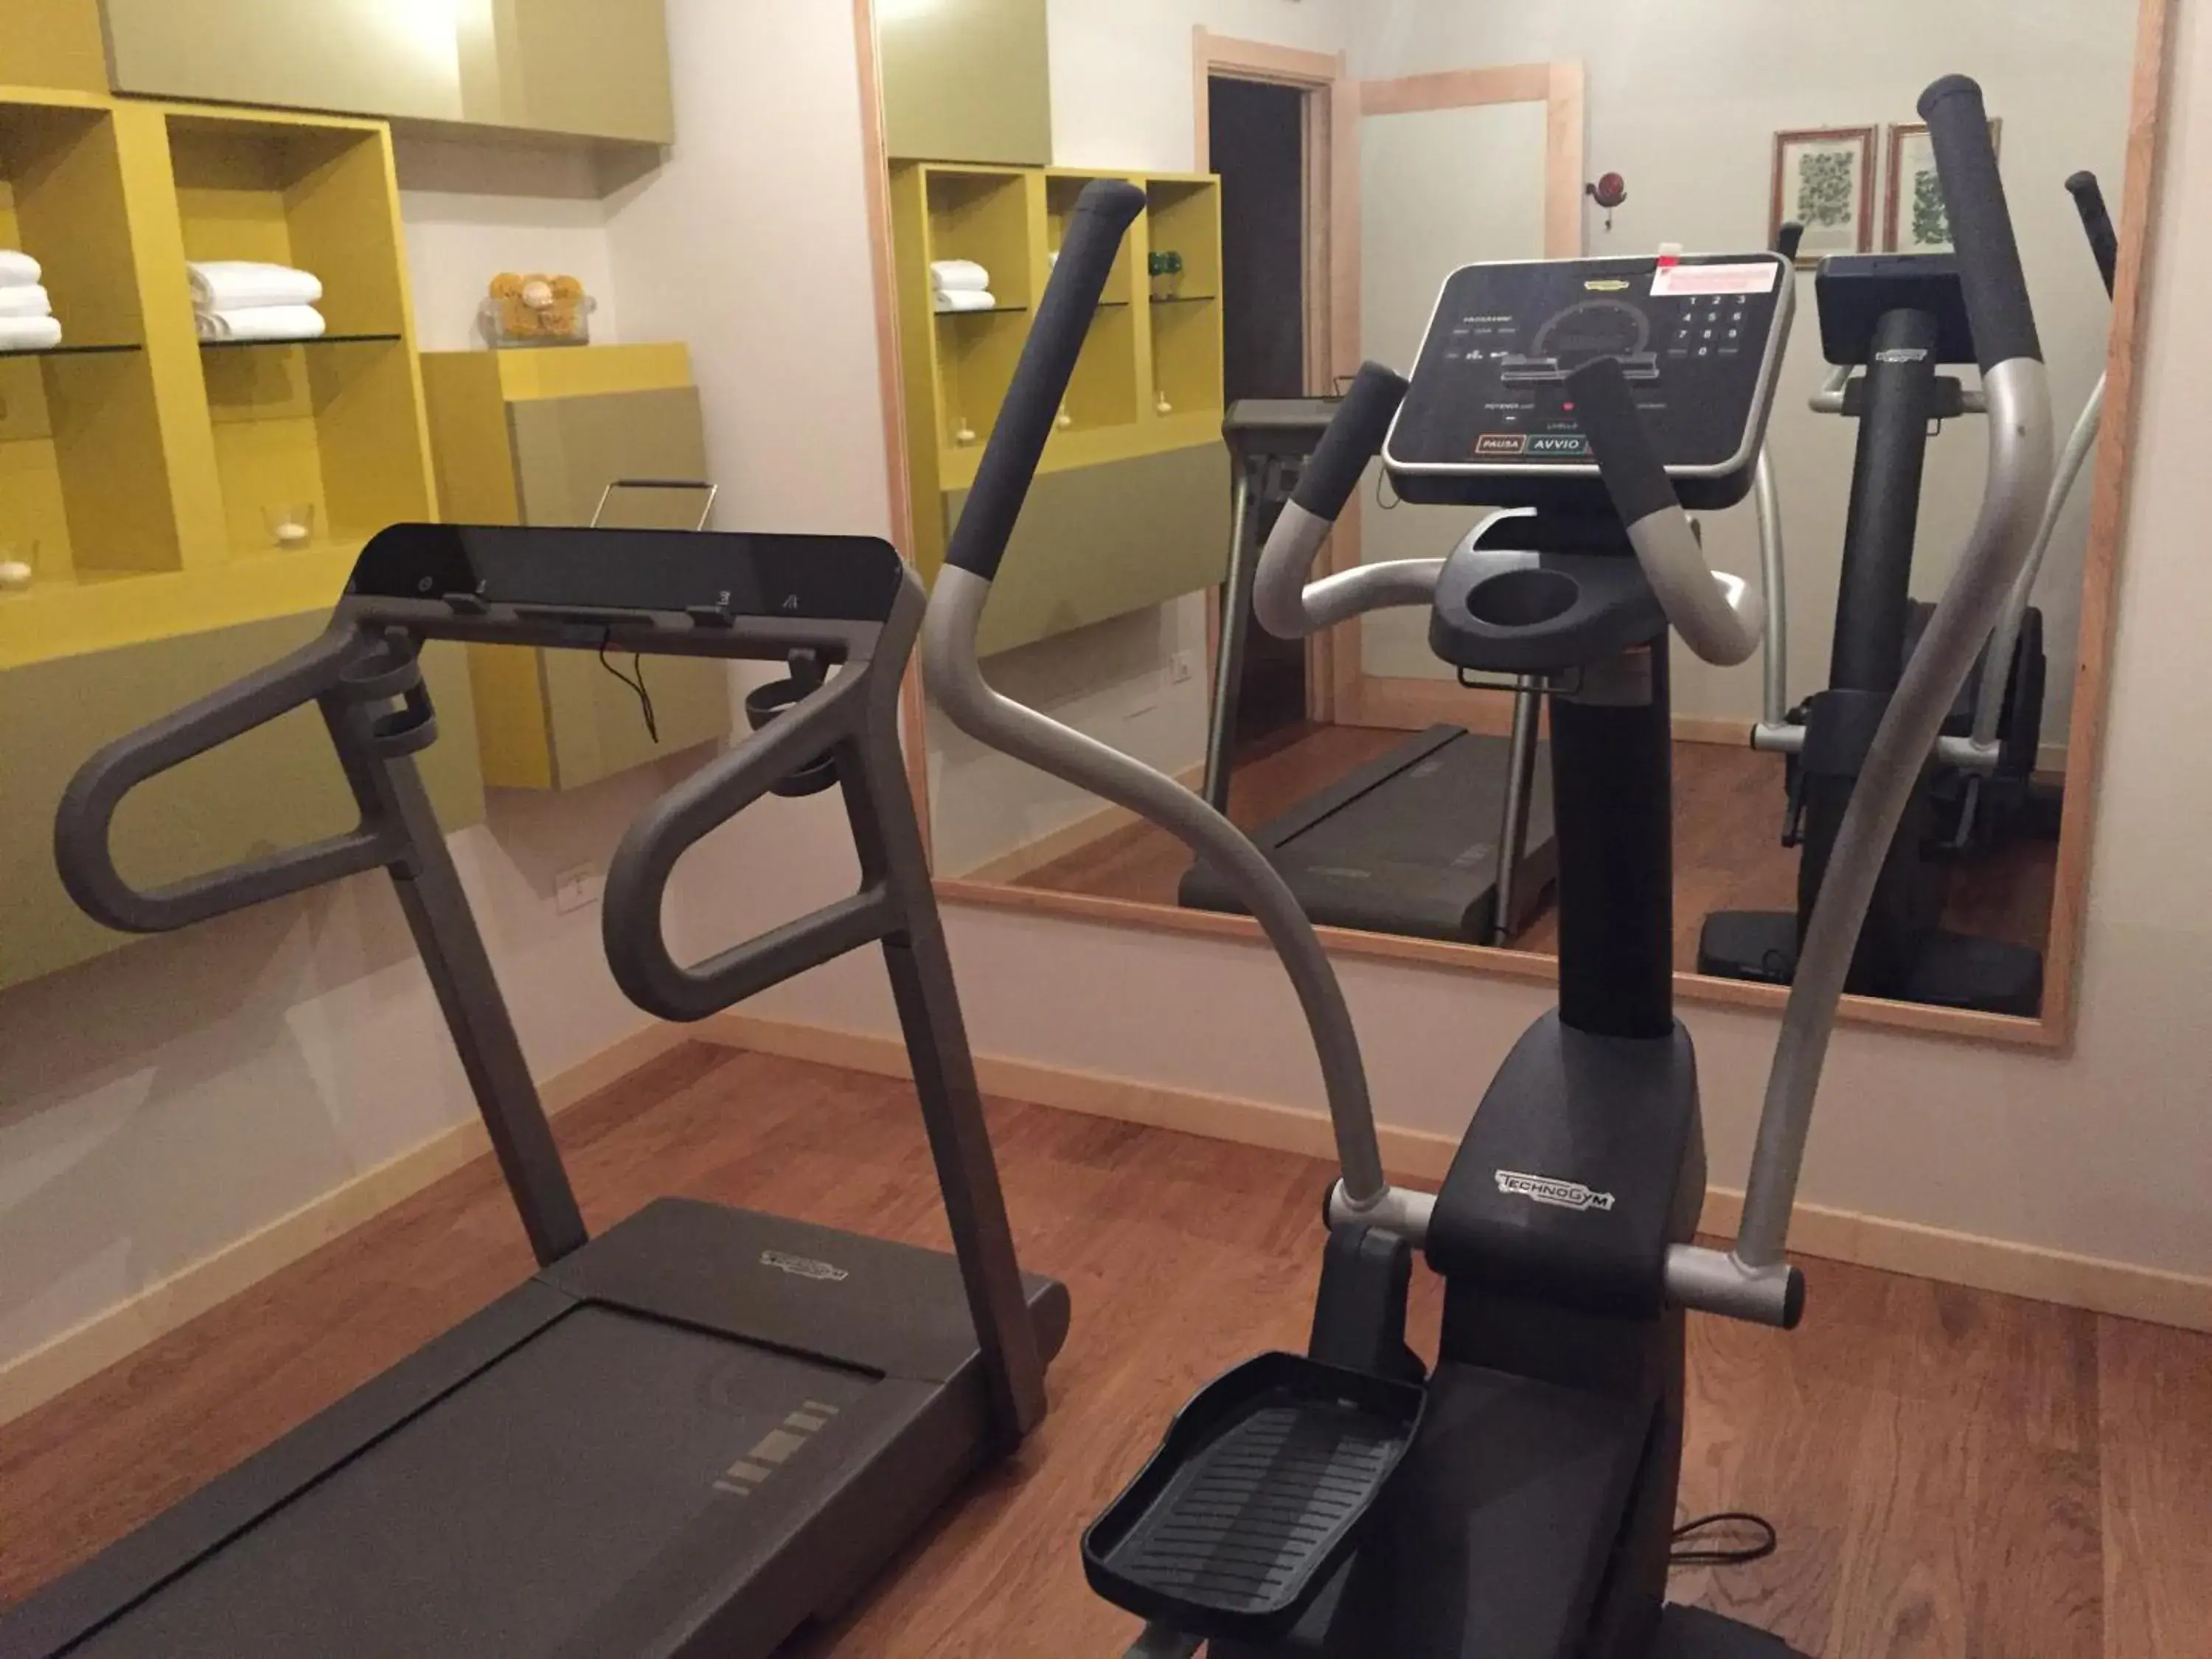 Fitness centre/facilities, Fitness Center/Facilities in Roccafiore Spa & Resort